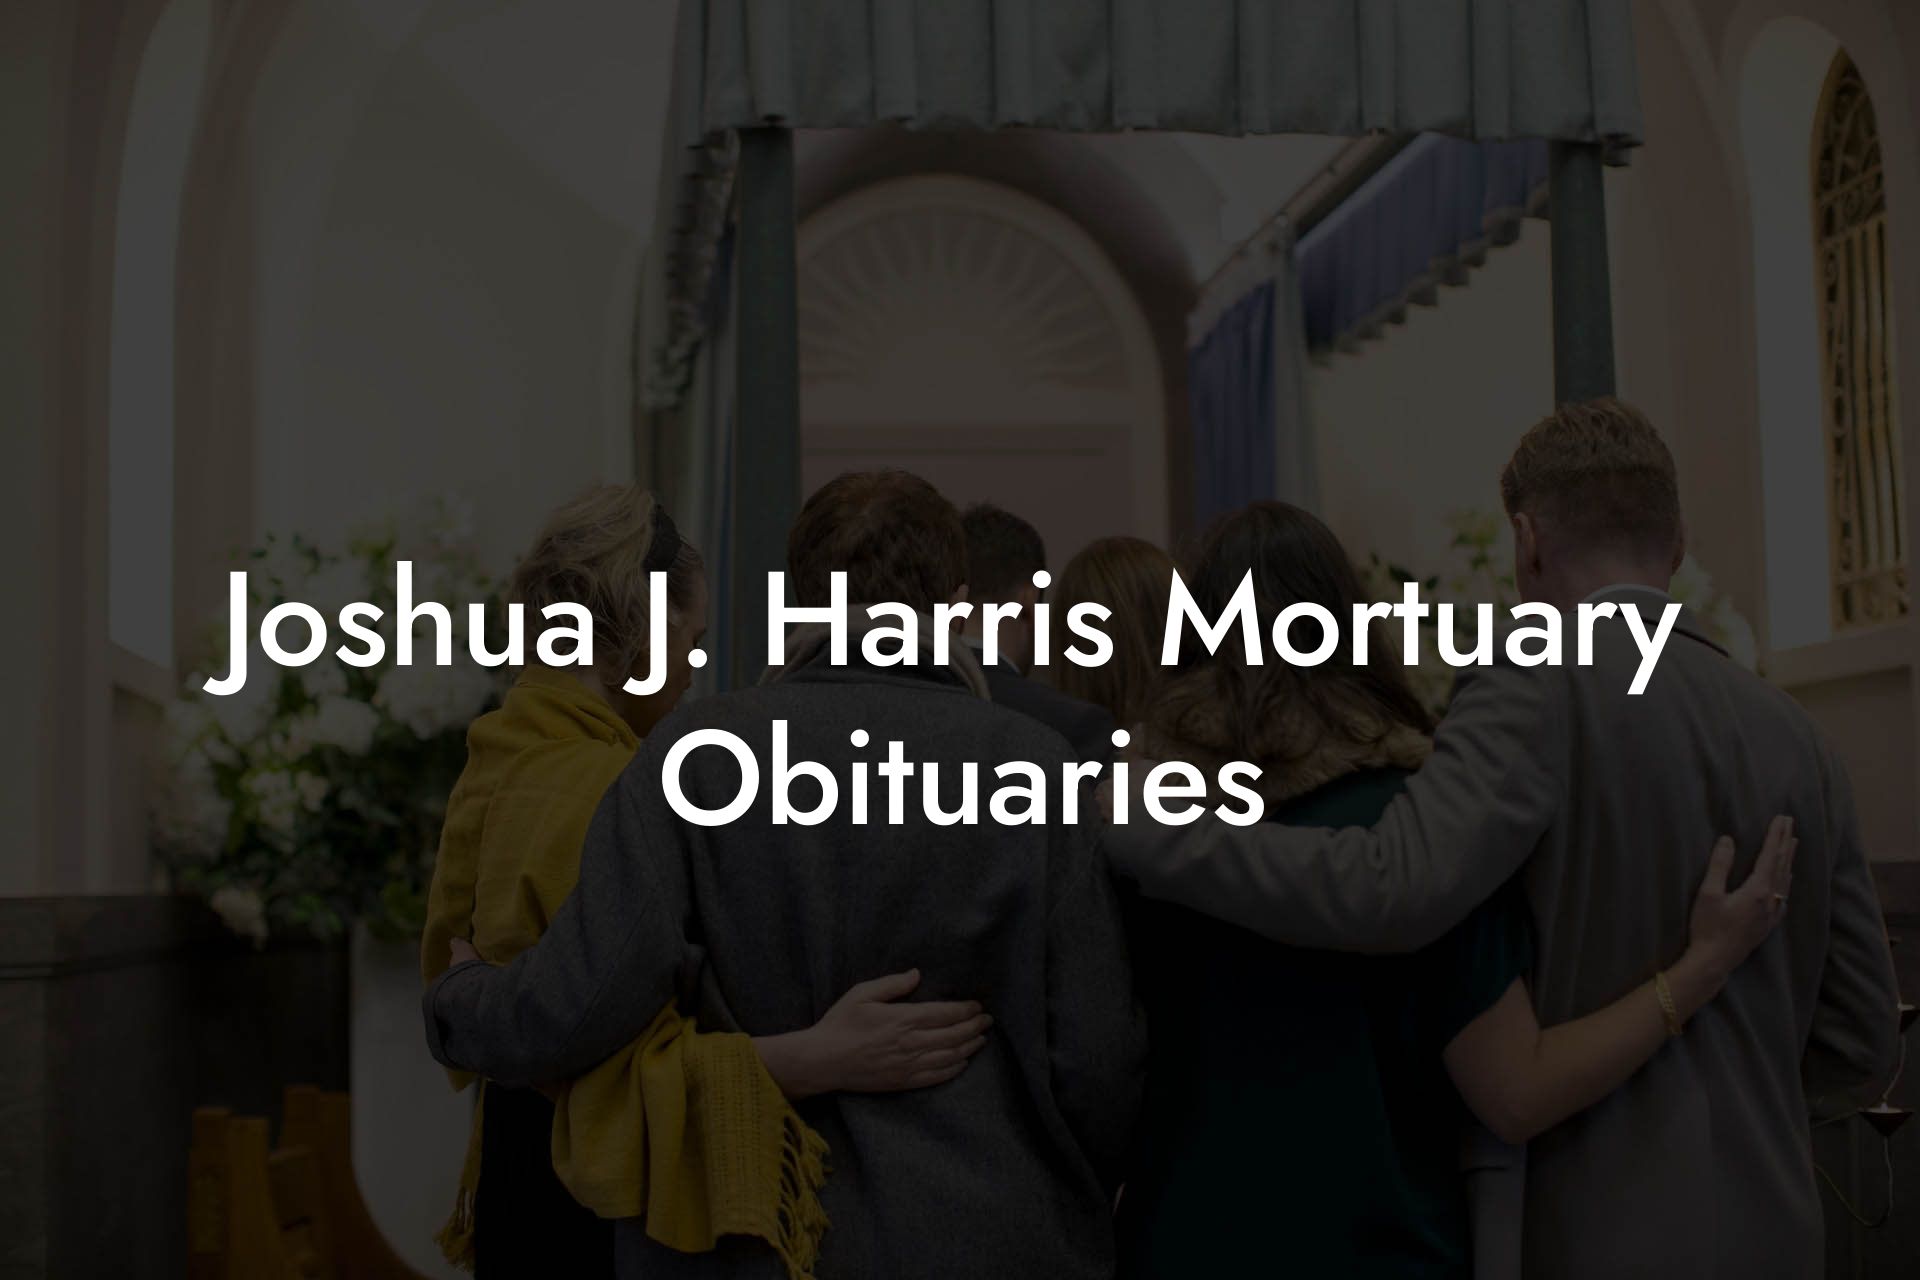 Joshua J. Harris Mortuary Obituaries